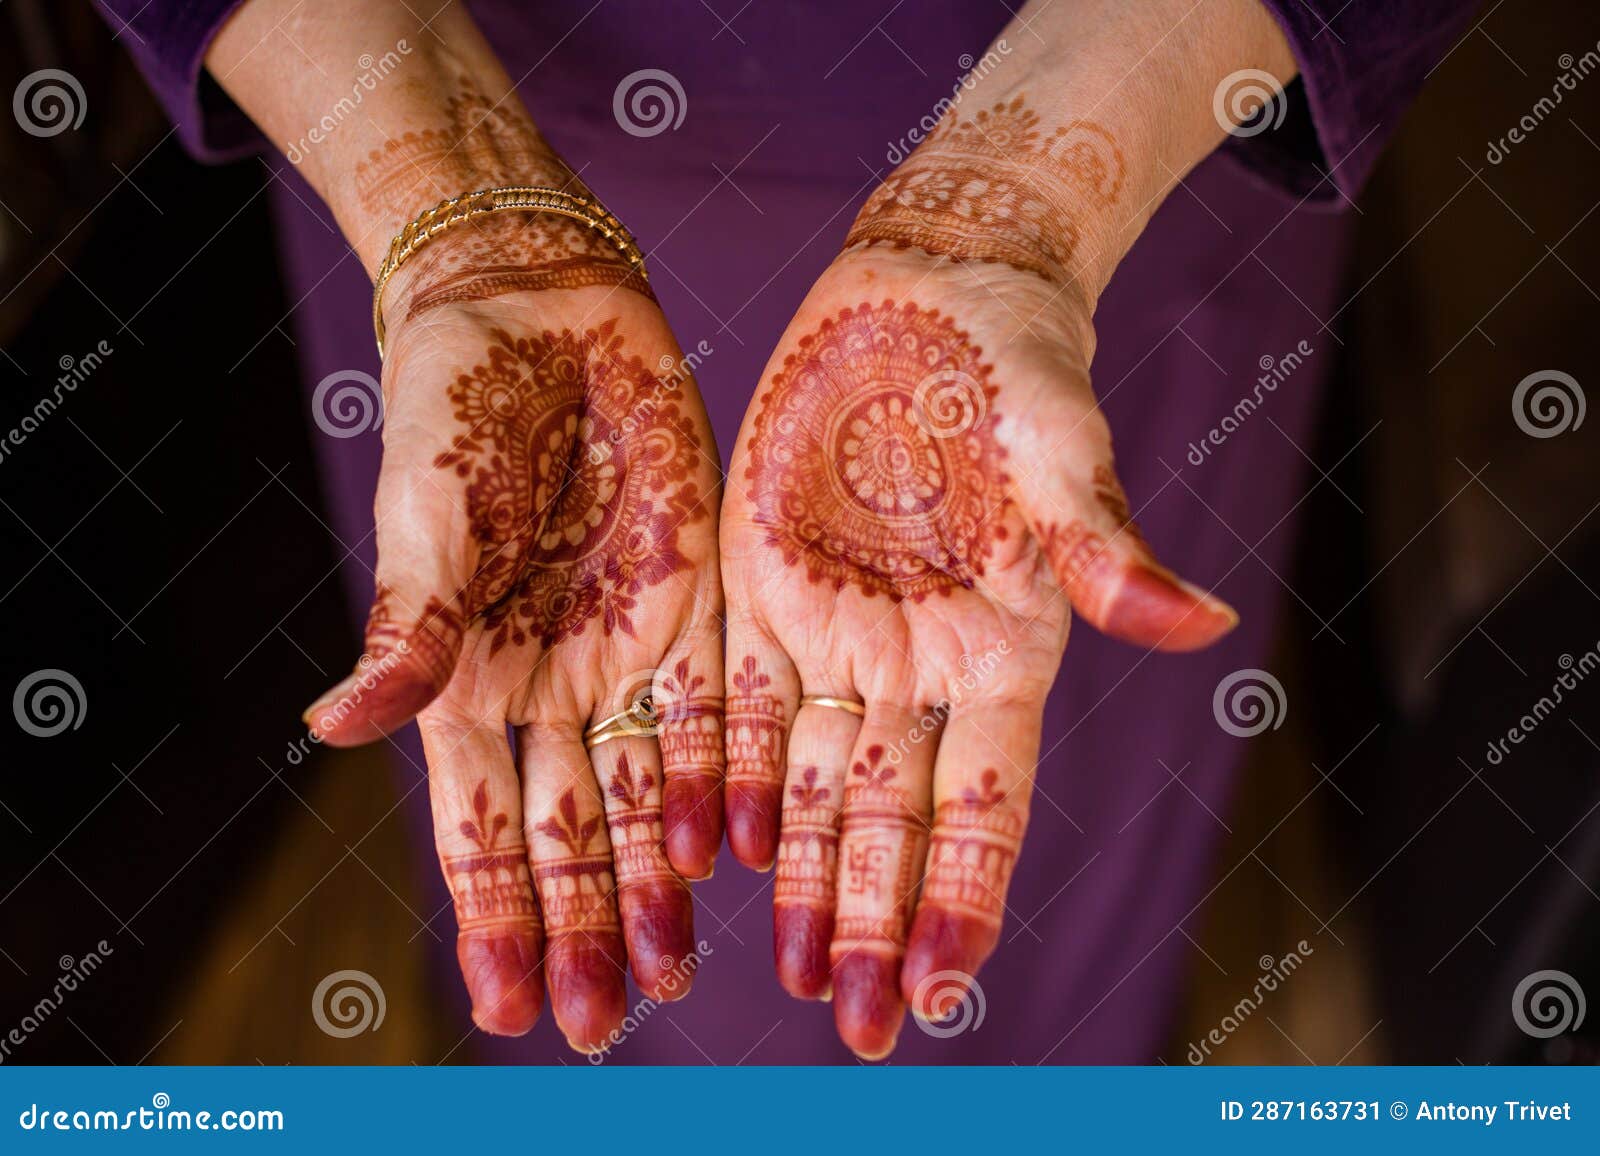 Hindu Wedding Couple Ring Ceremony Stock Photo - Image of ring, mehndi:  283944500